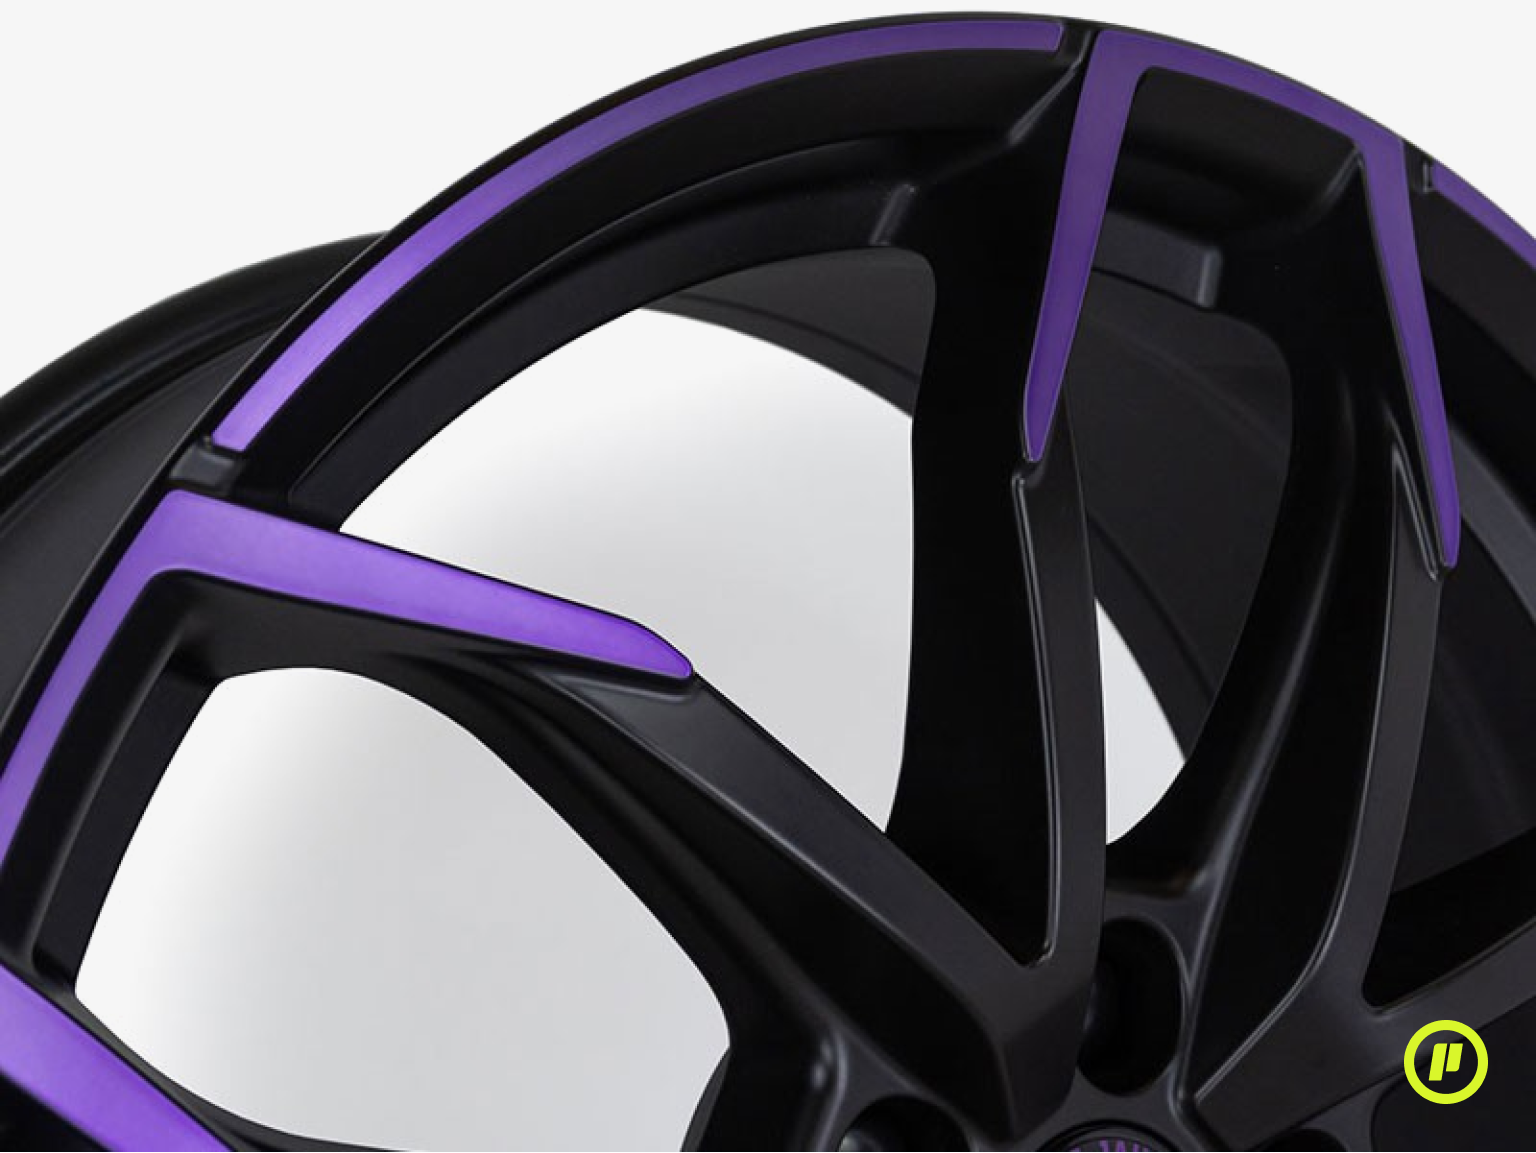 JE Design Wheels - Lucca Purple Edition 20" x 8J | ET 40 | 5x112 [3 Colors]